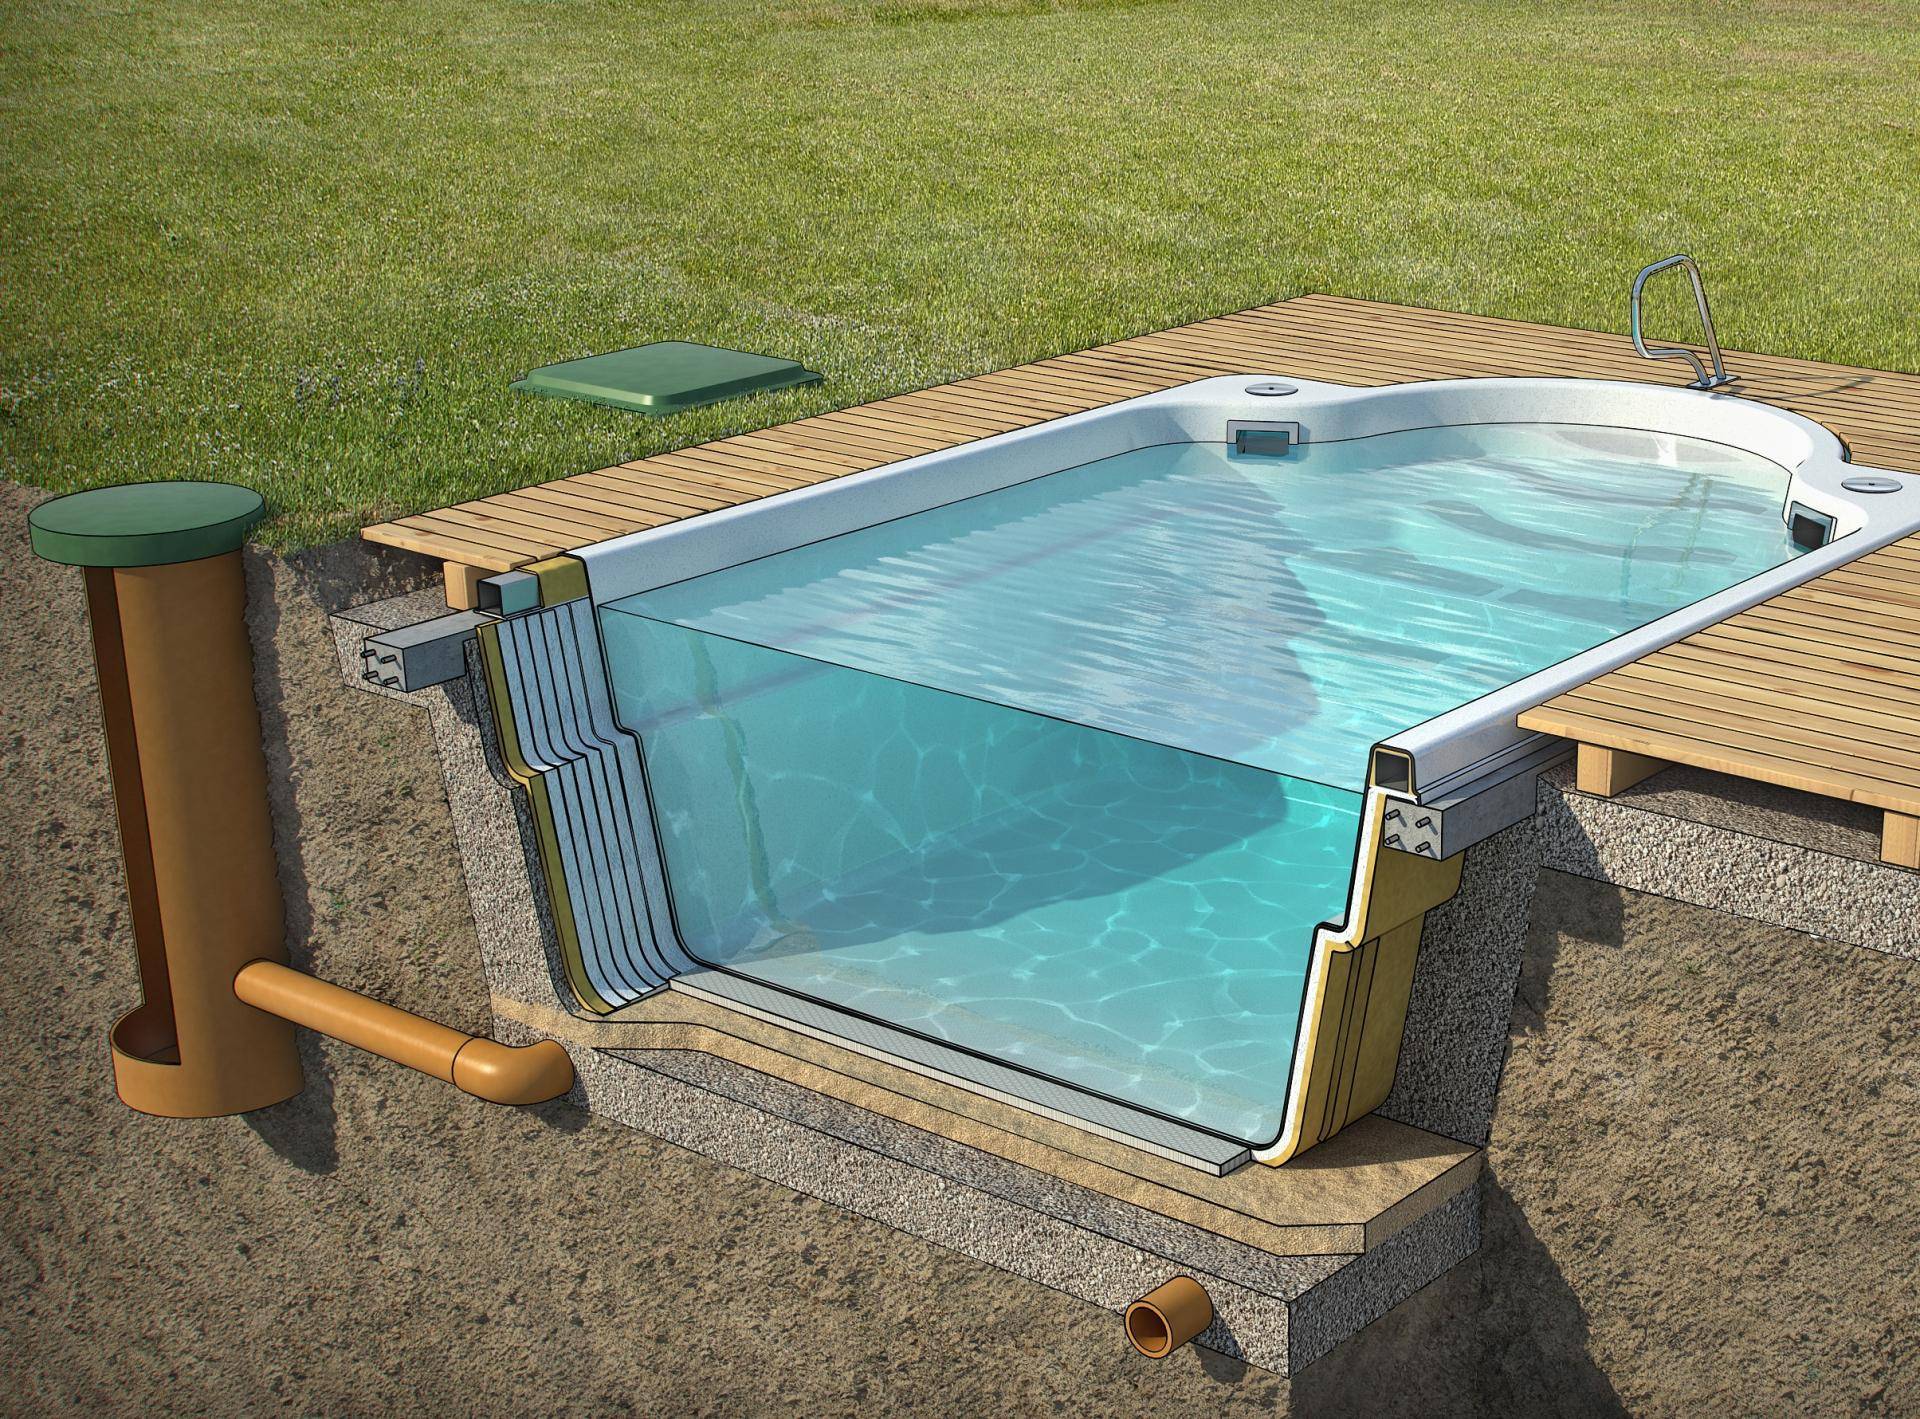 Как построить бассейн на даче своими руками из подручных материалов?